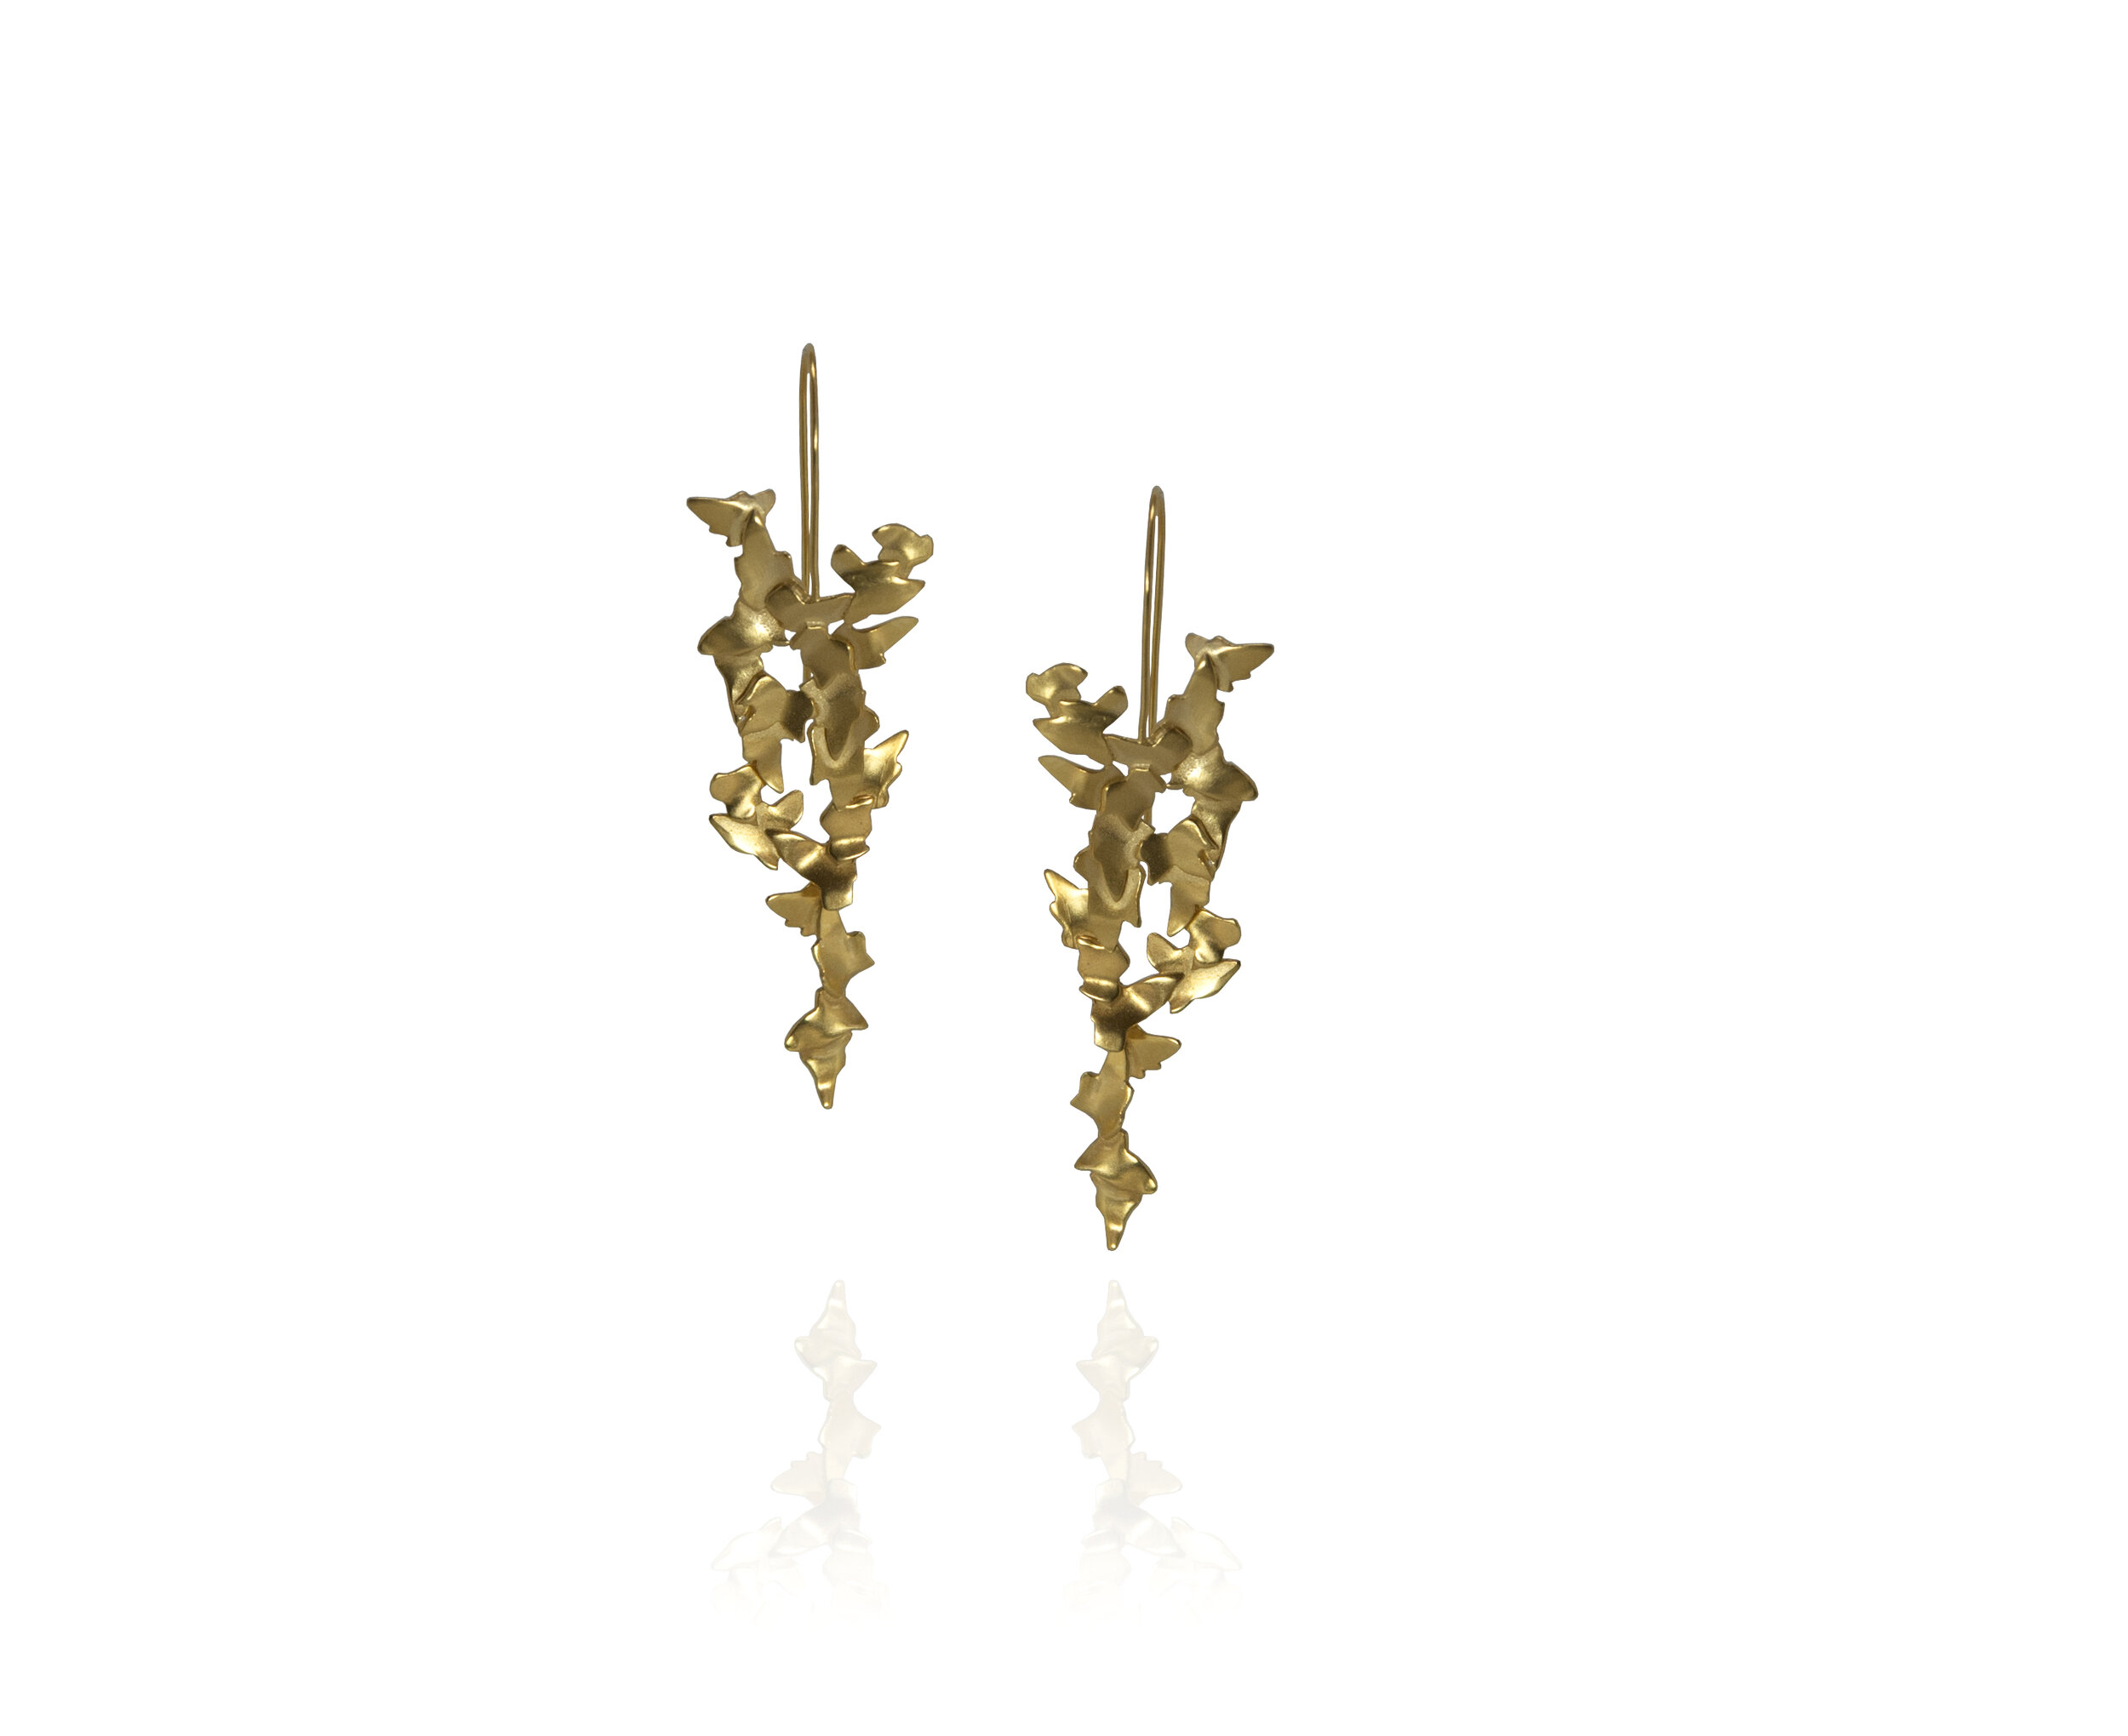 Golden Ivy earrings 2 - High res.jpg